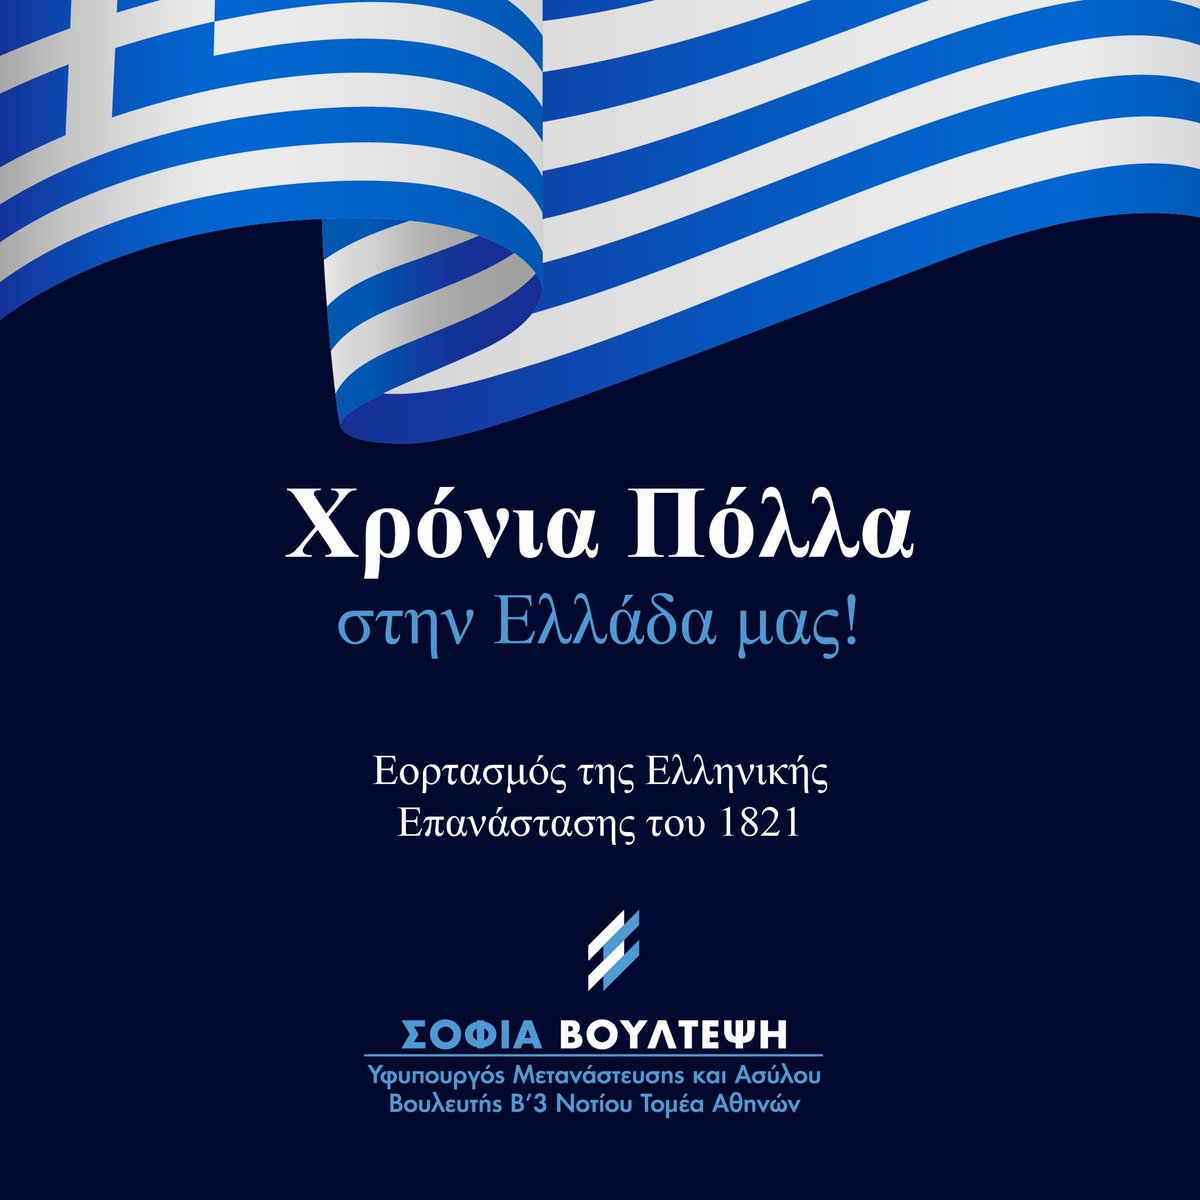 Χρονια πολλά στην Ελλάδα μας 🇬🇷